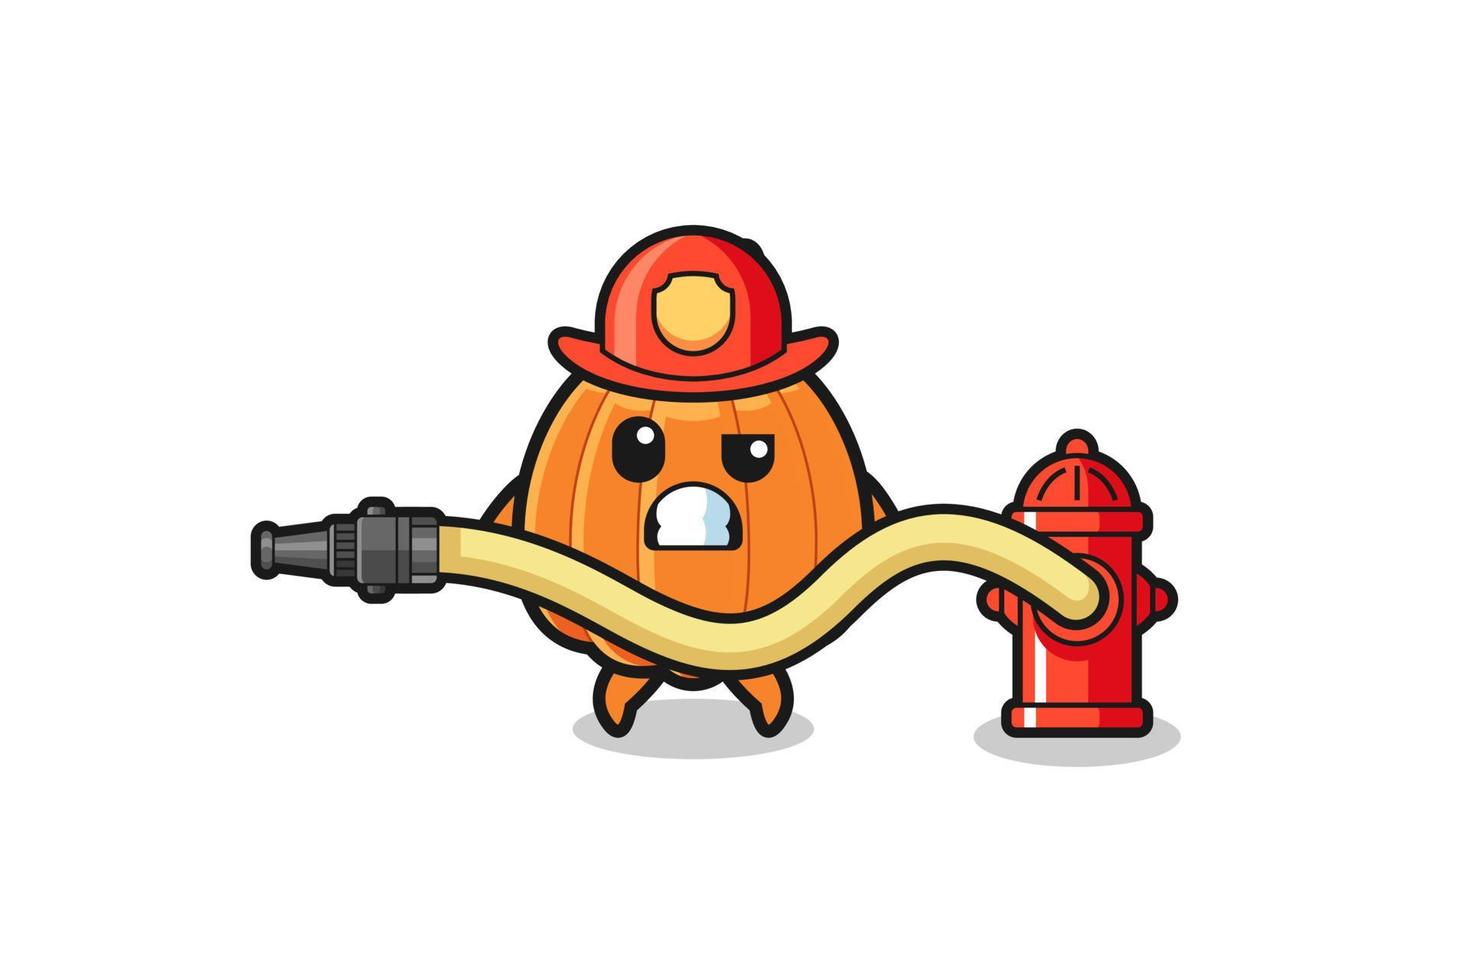 pompoen cartoon als brandweerman mascotte met waterslang vector